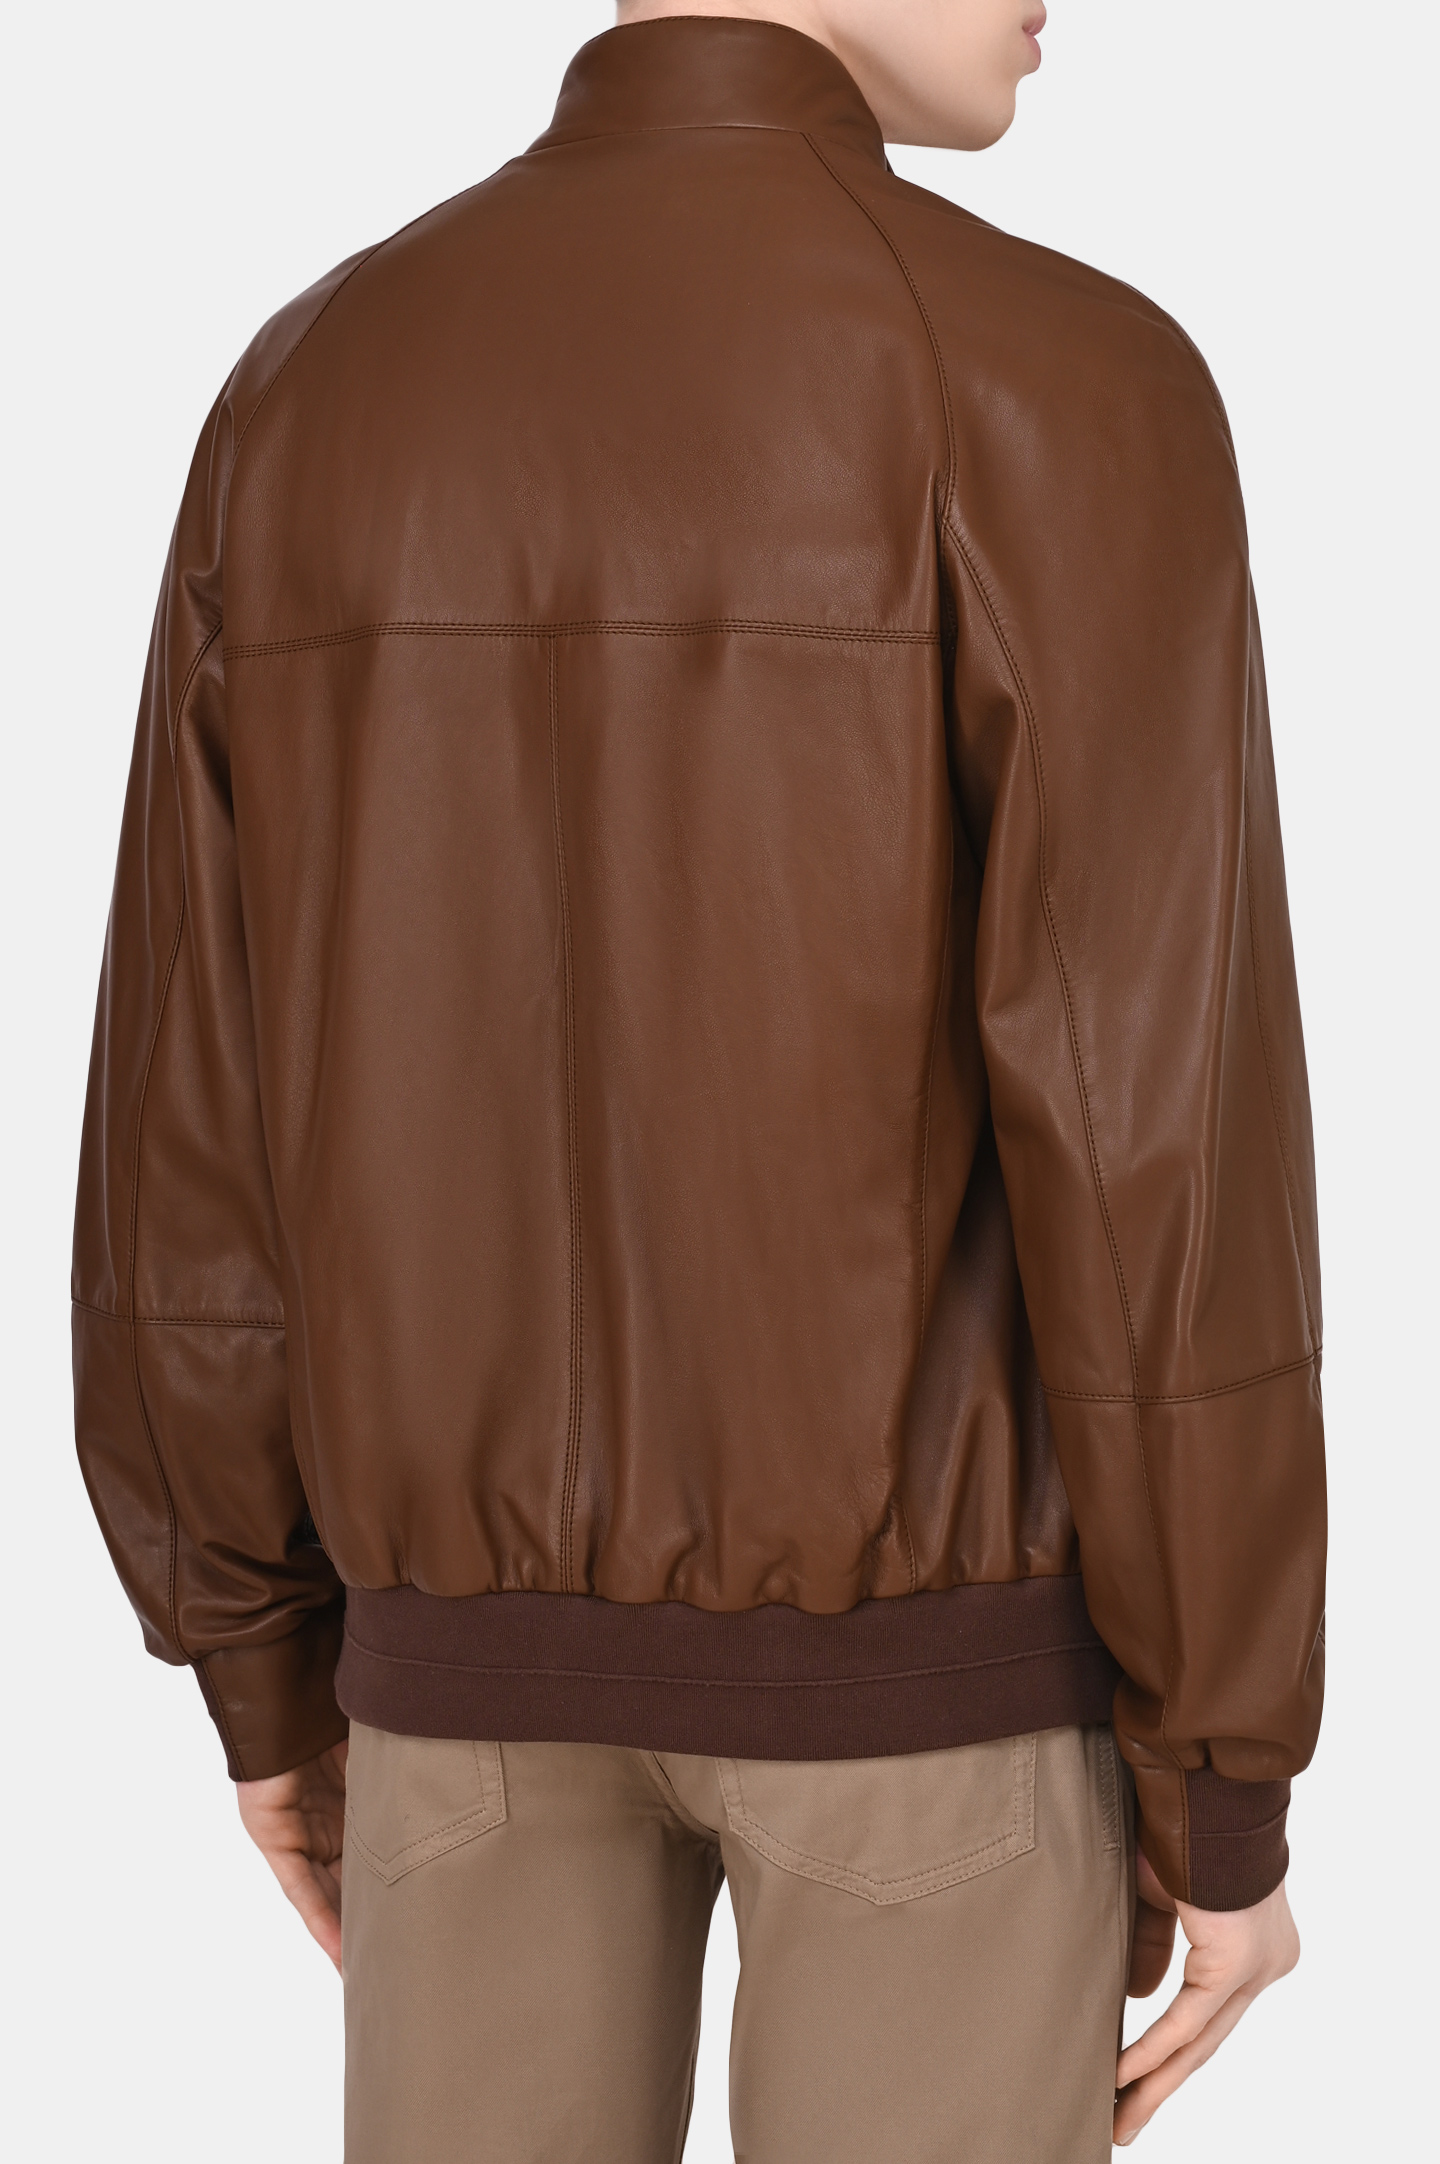 Куртка BRUNELLO  CUCINELLI MPTAN1693, цвет: Коричневый, Мужской